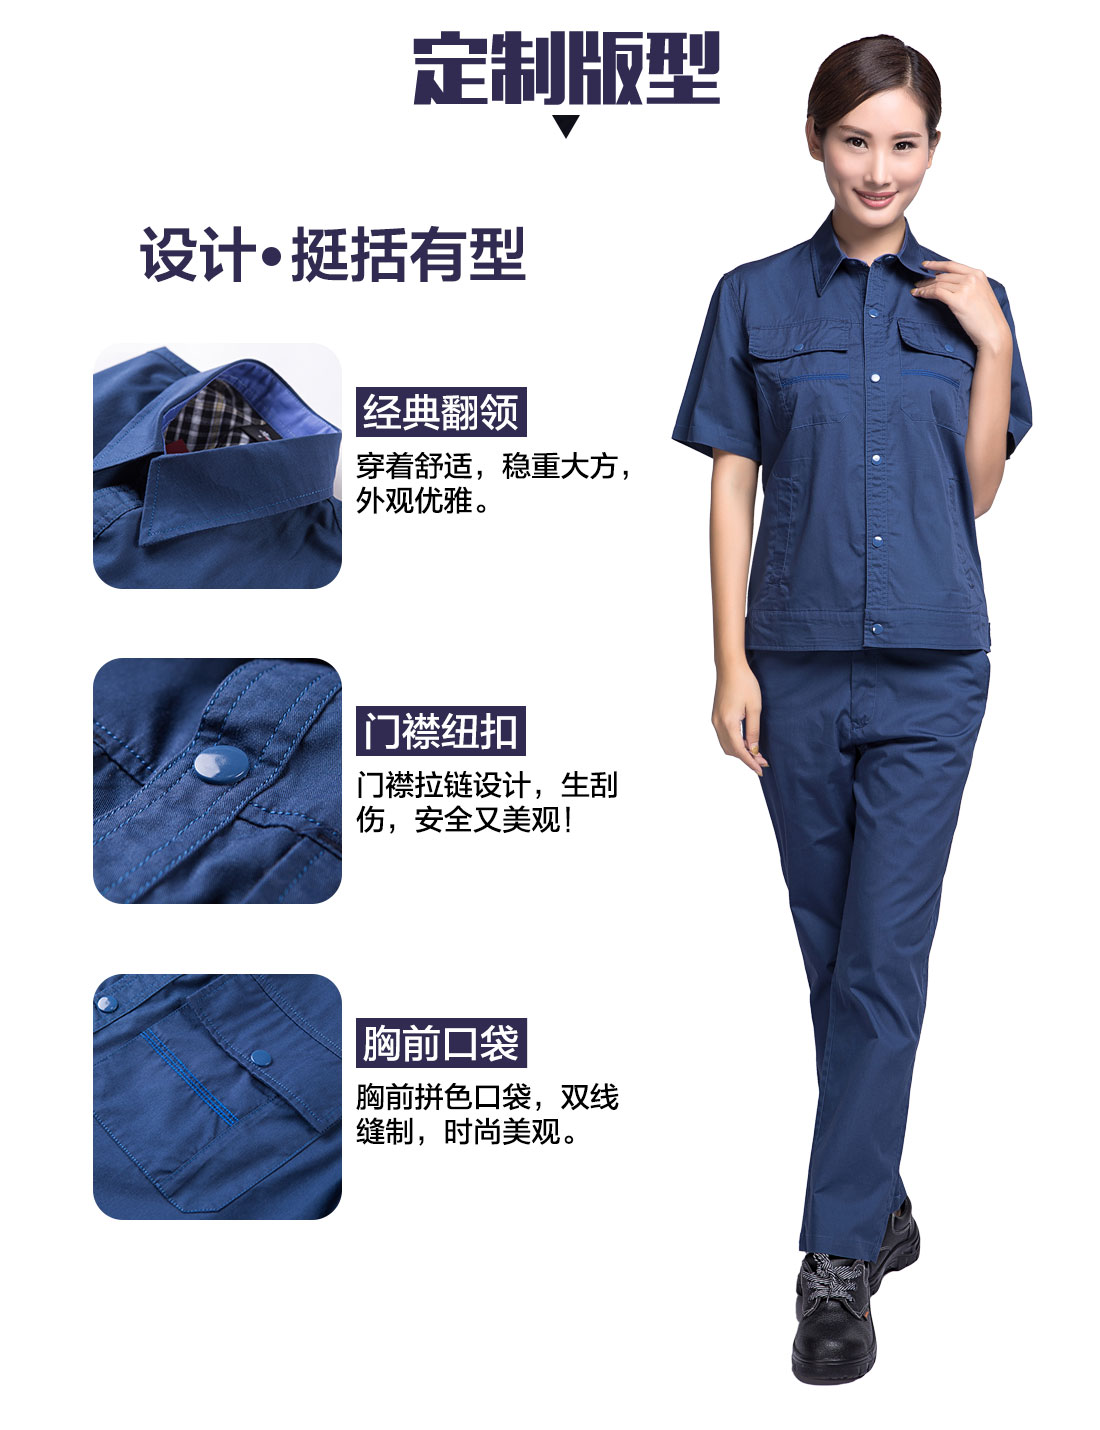 扬州工作服的3D立体版型设计